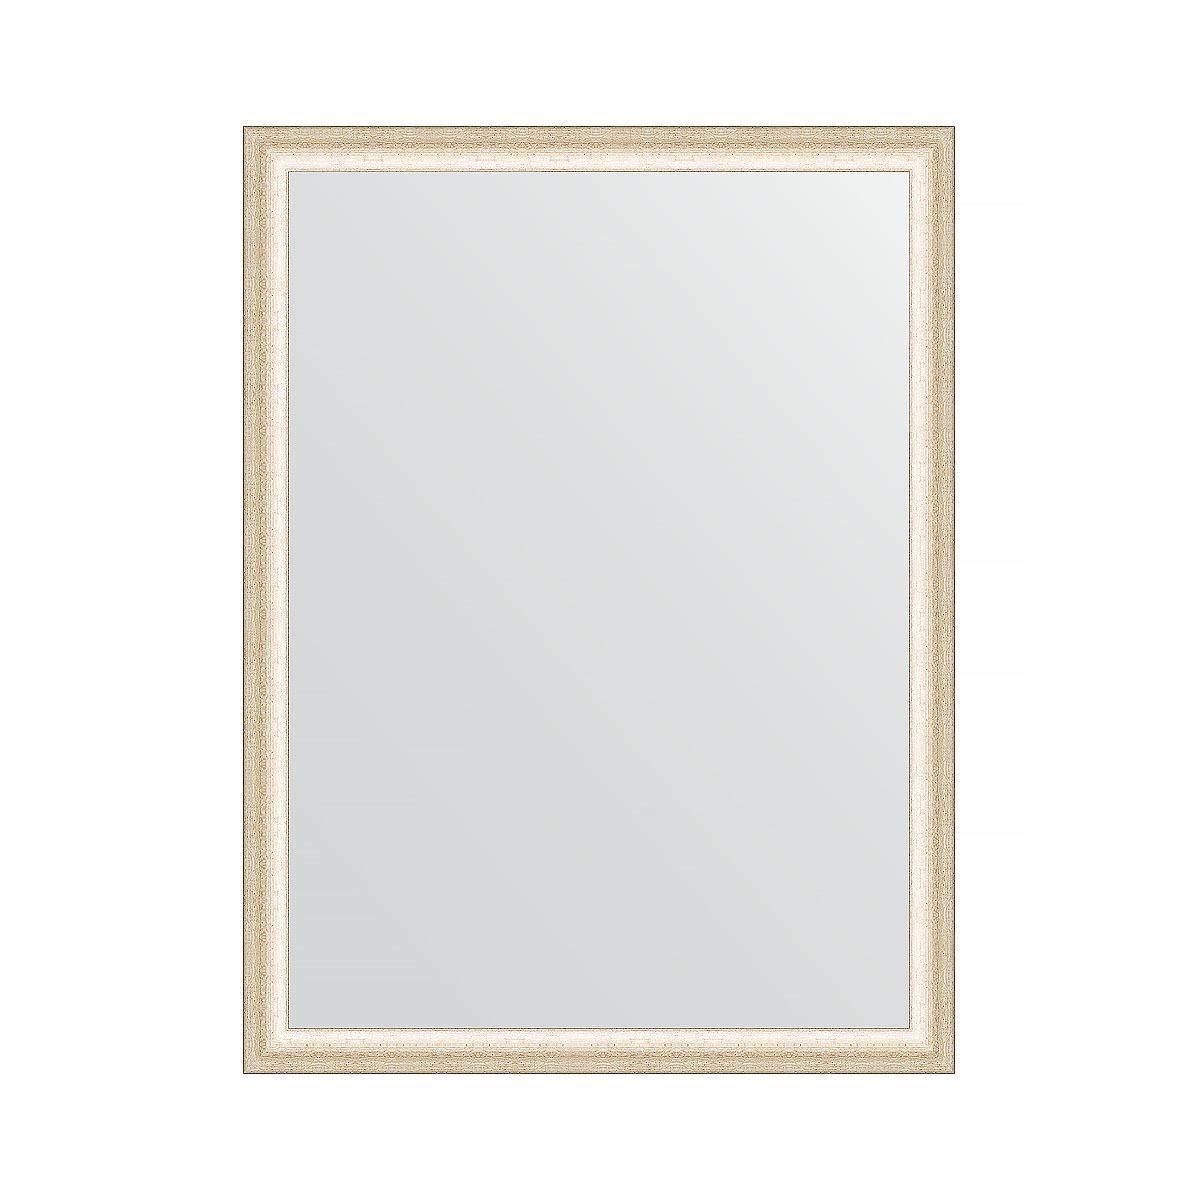 Зеркало в багетной раме Evoform состаренное серебро 37 мм 60х80 см зеркало в багетной раме evoform травленое серебро 59 мм 54х104 см